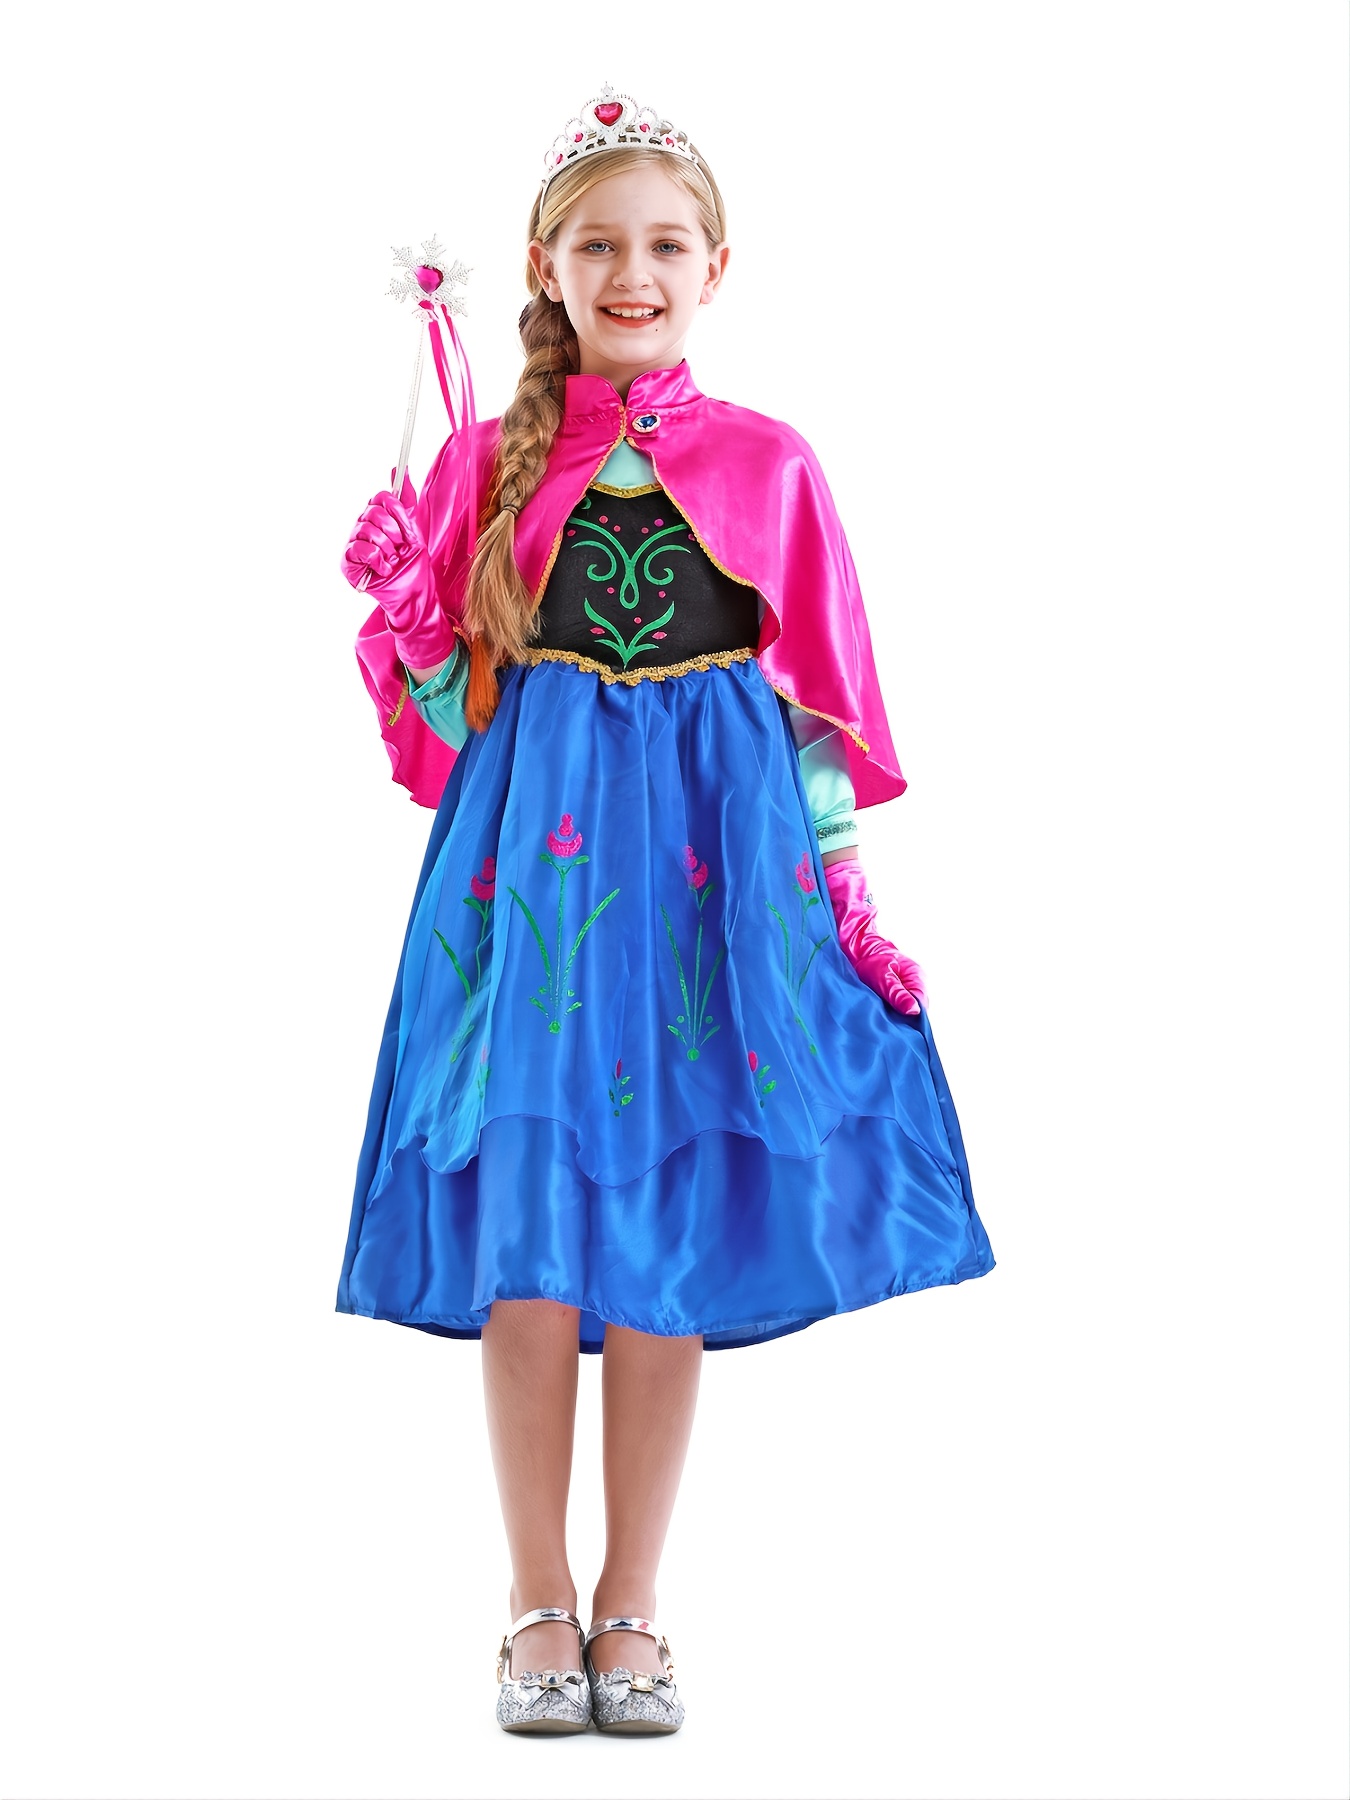 Robe Cape Déguisement Costume Bleu Reine Neiges Frozen Anna Fille Princesse  Noel